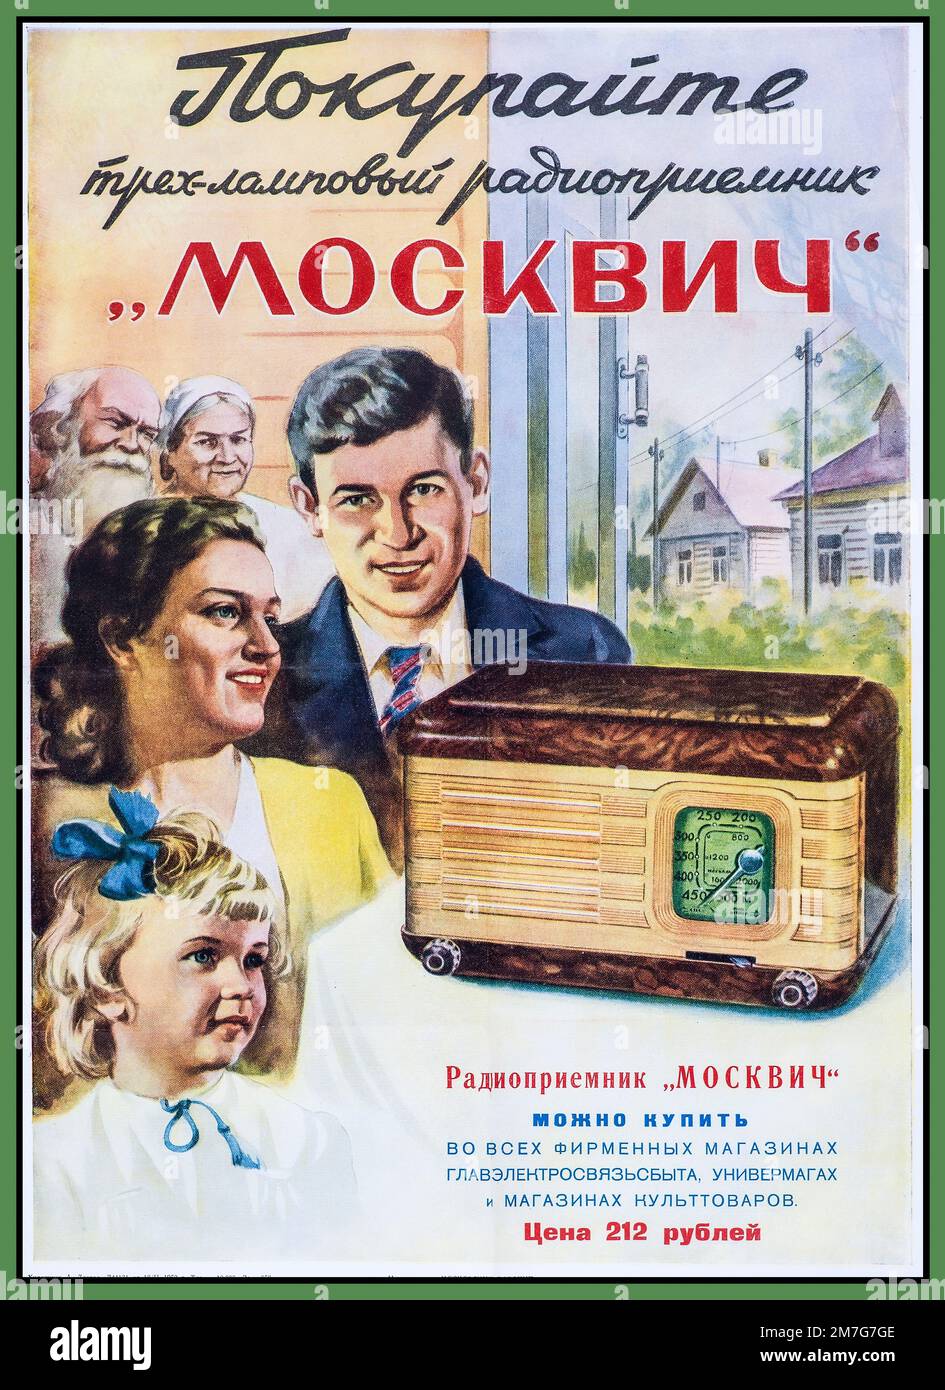 Post WW2 1940s-1950s URSS RADIO Poster Pubblicità per la Russia Sovietica radio 'Compra radio 'Moskvich' da Un artista Lavrov Foto Stock